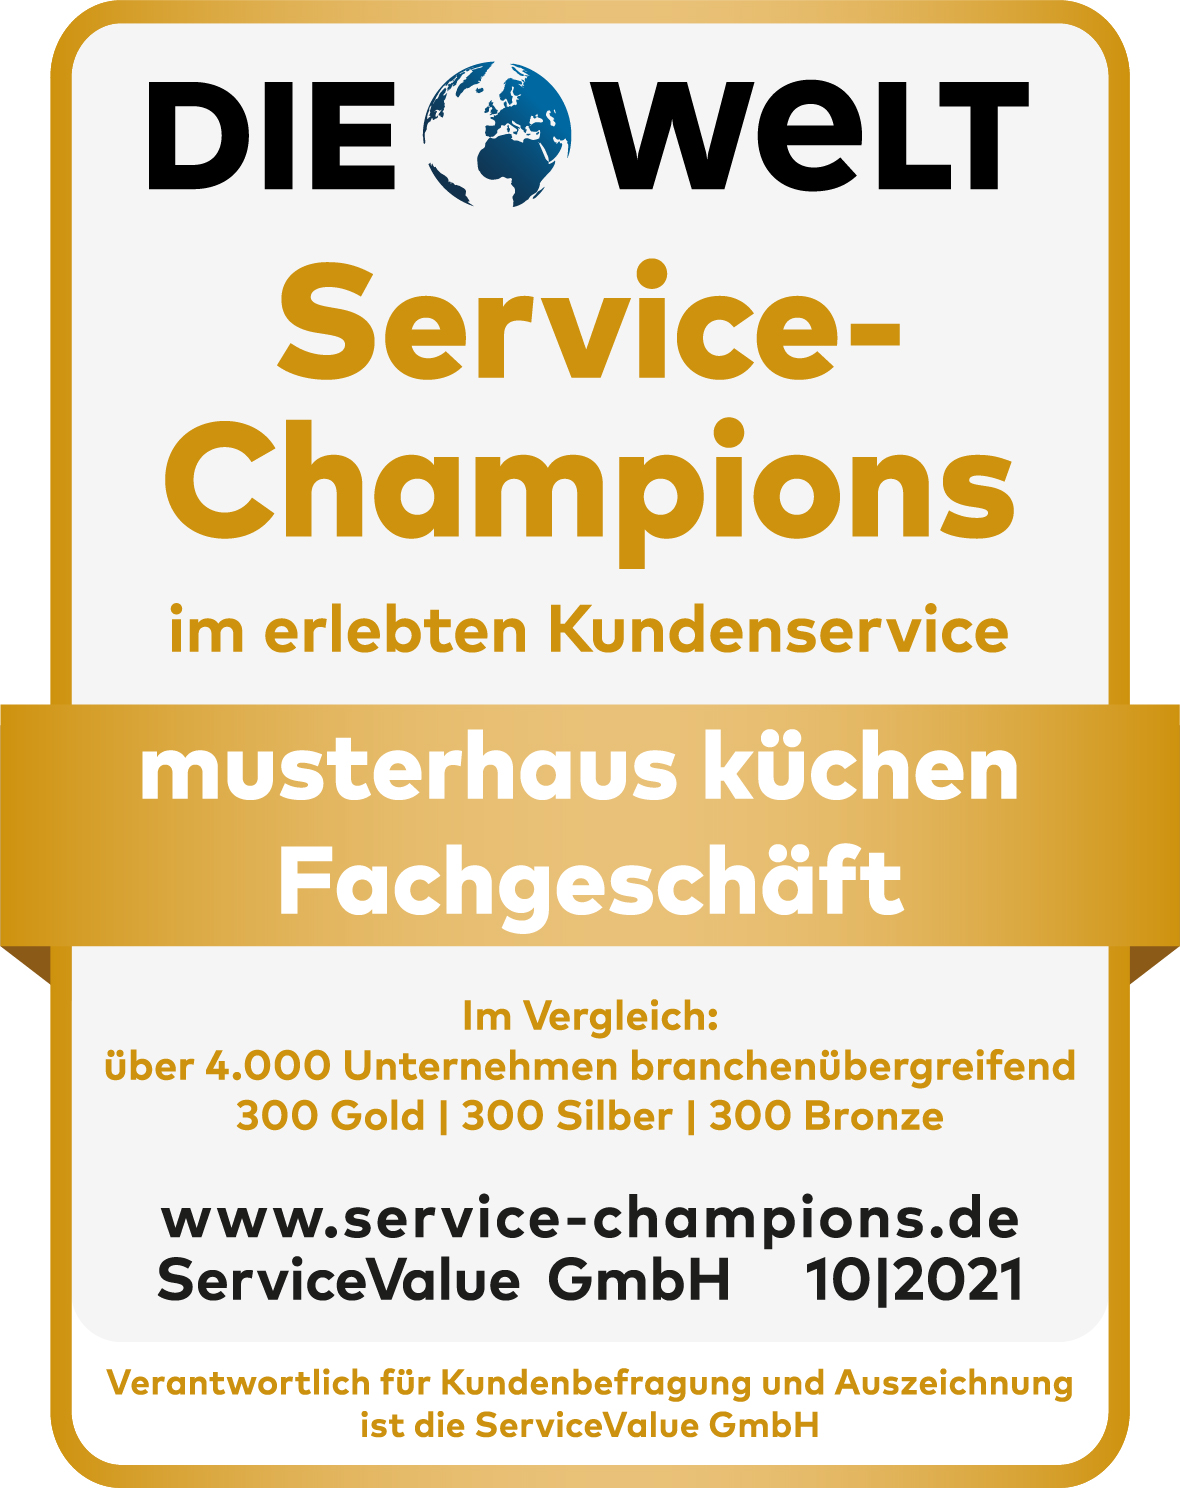 Gold-Status erneuert: musterhaus küchen Fachgeschäfte als „Service-Champions in Gold“ ausgezeichnet